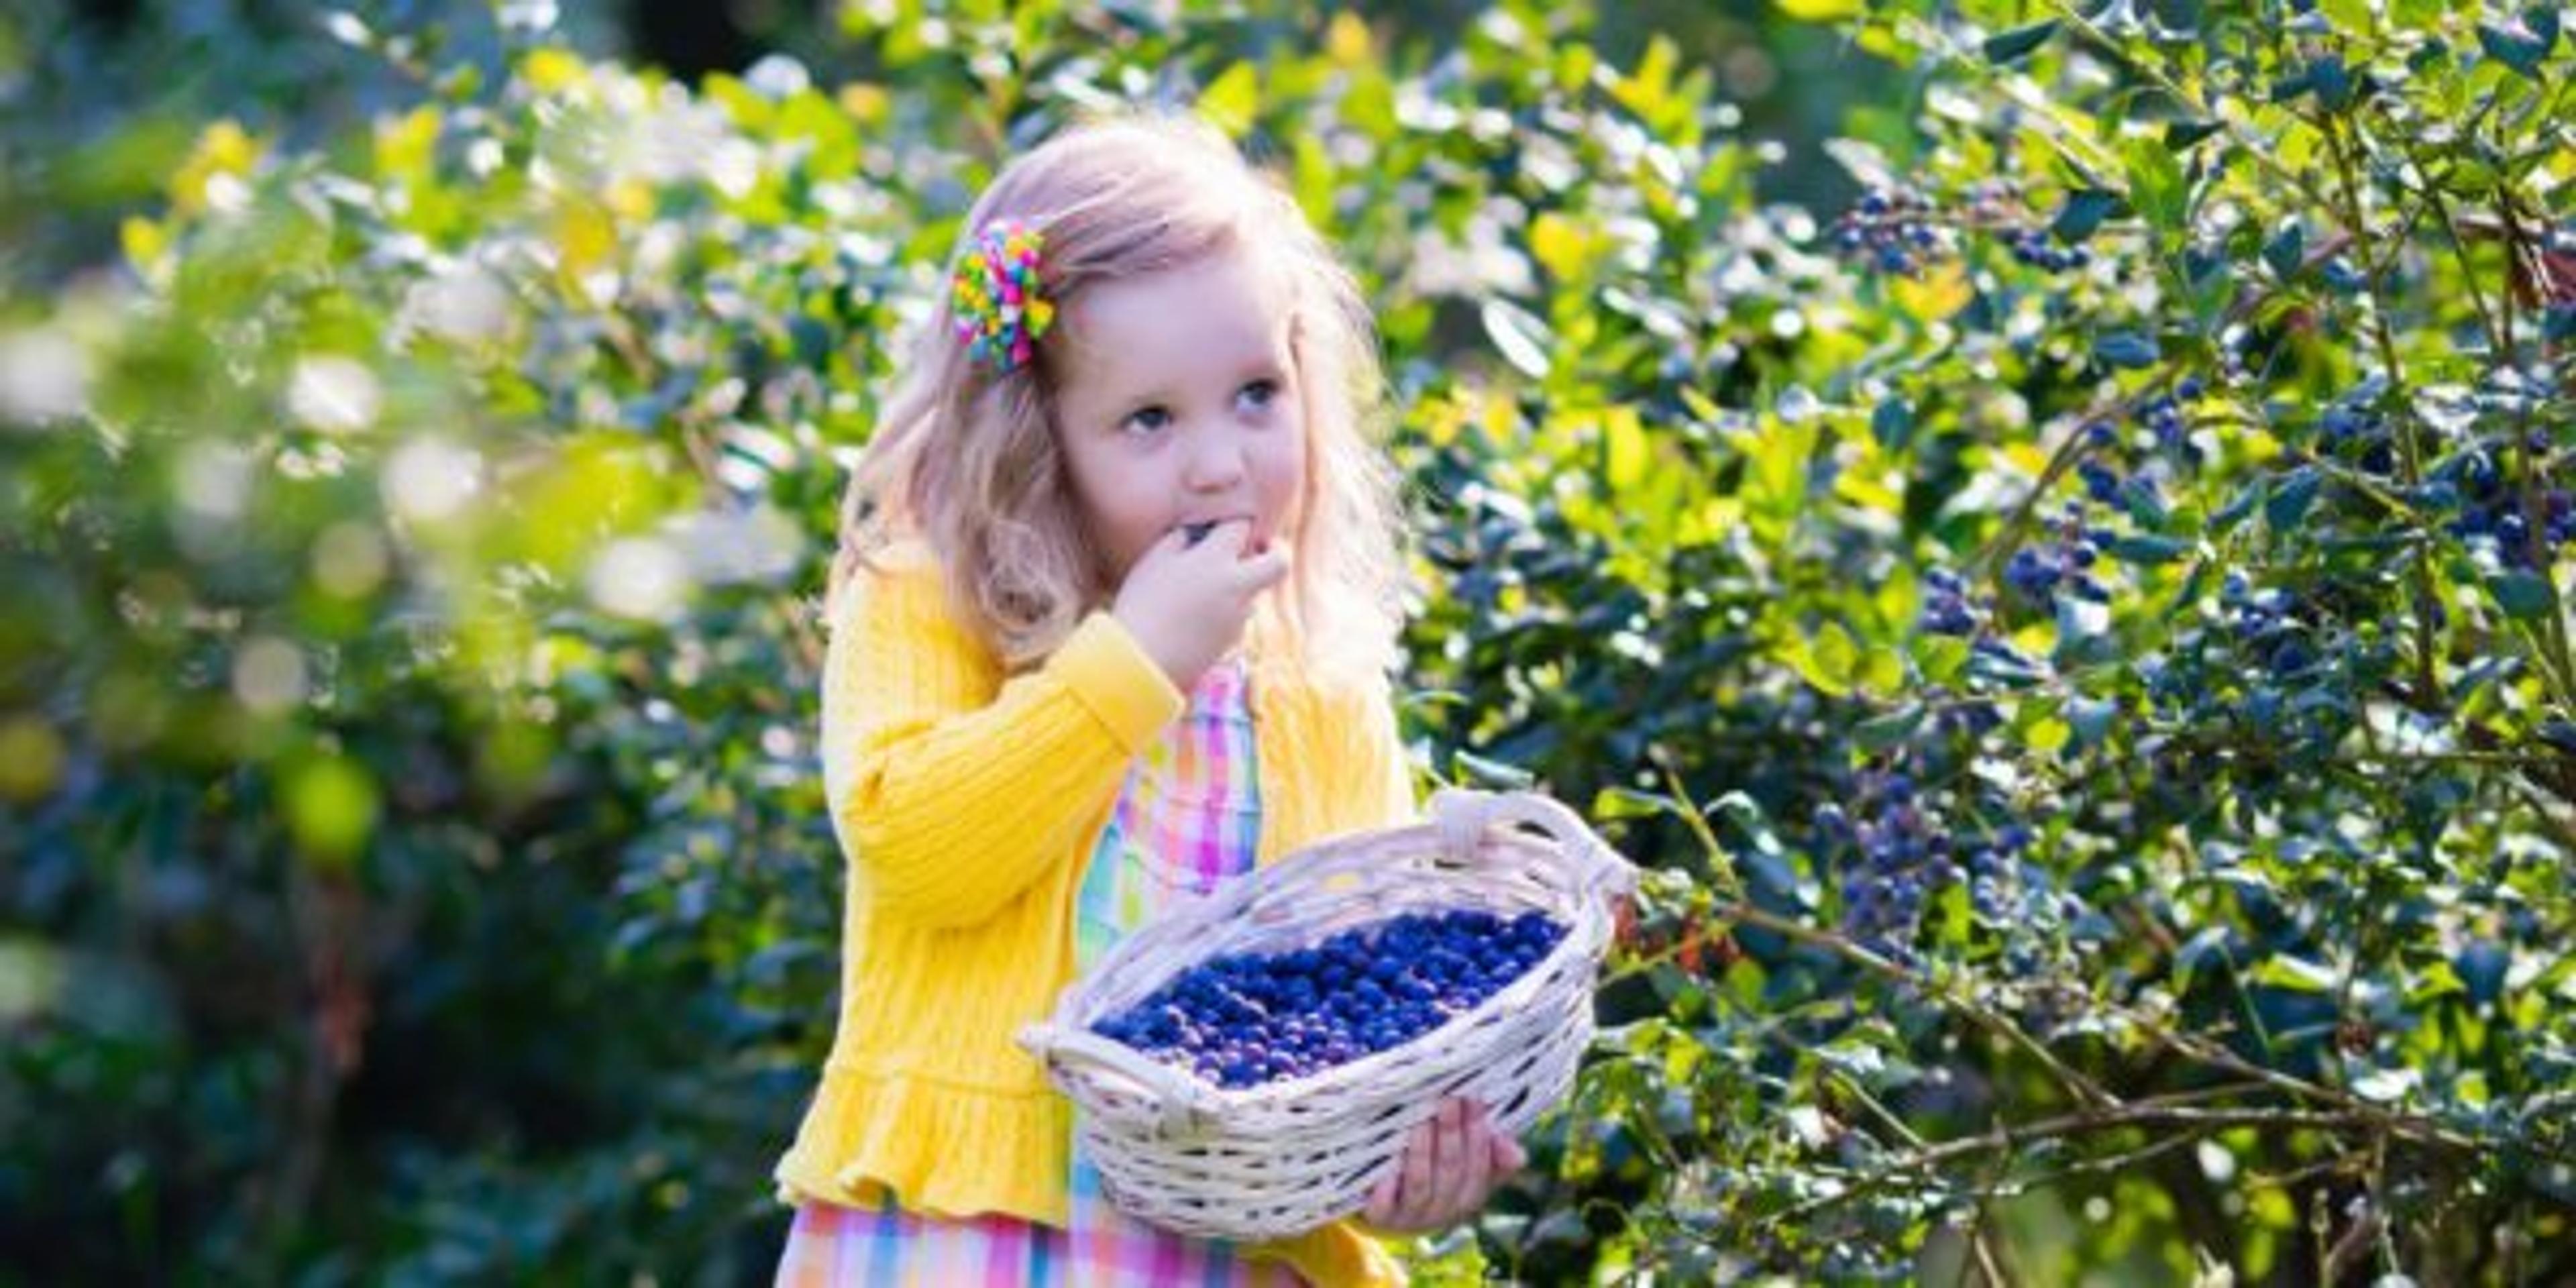 Little girl picking blueberry